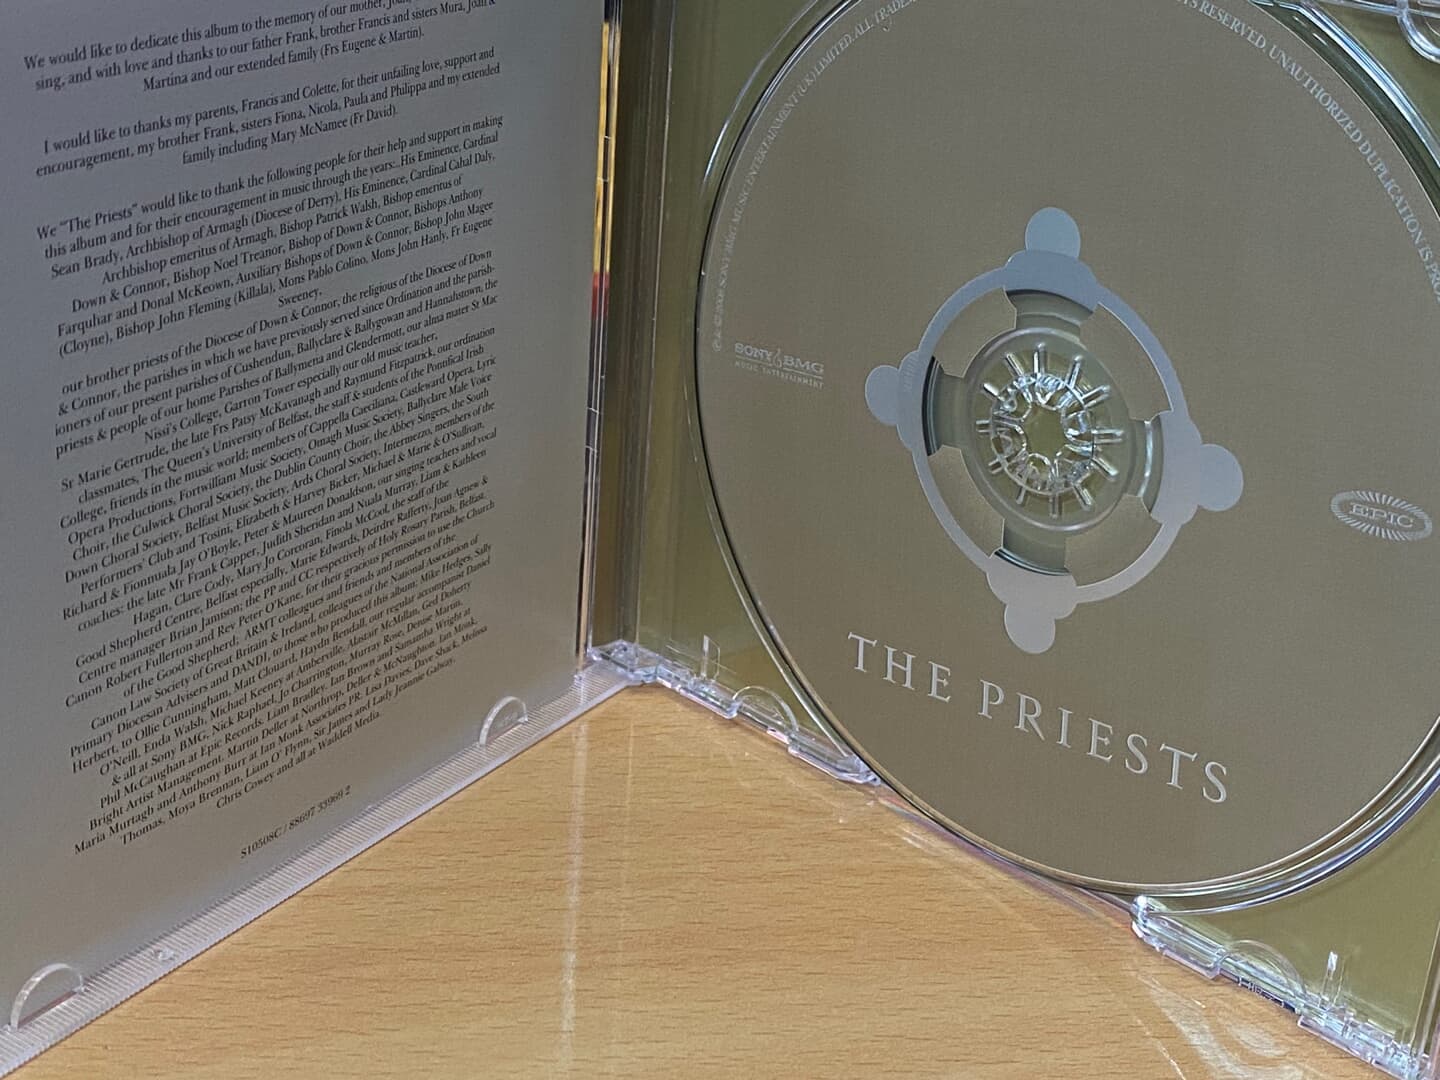 더 프리스츠 - The Priests - The Priests